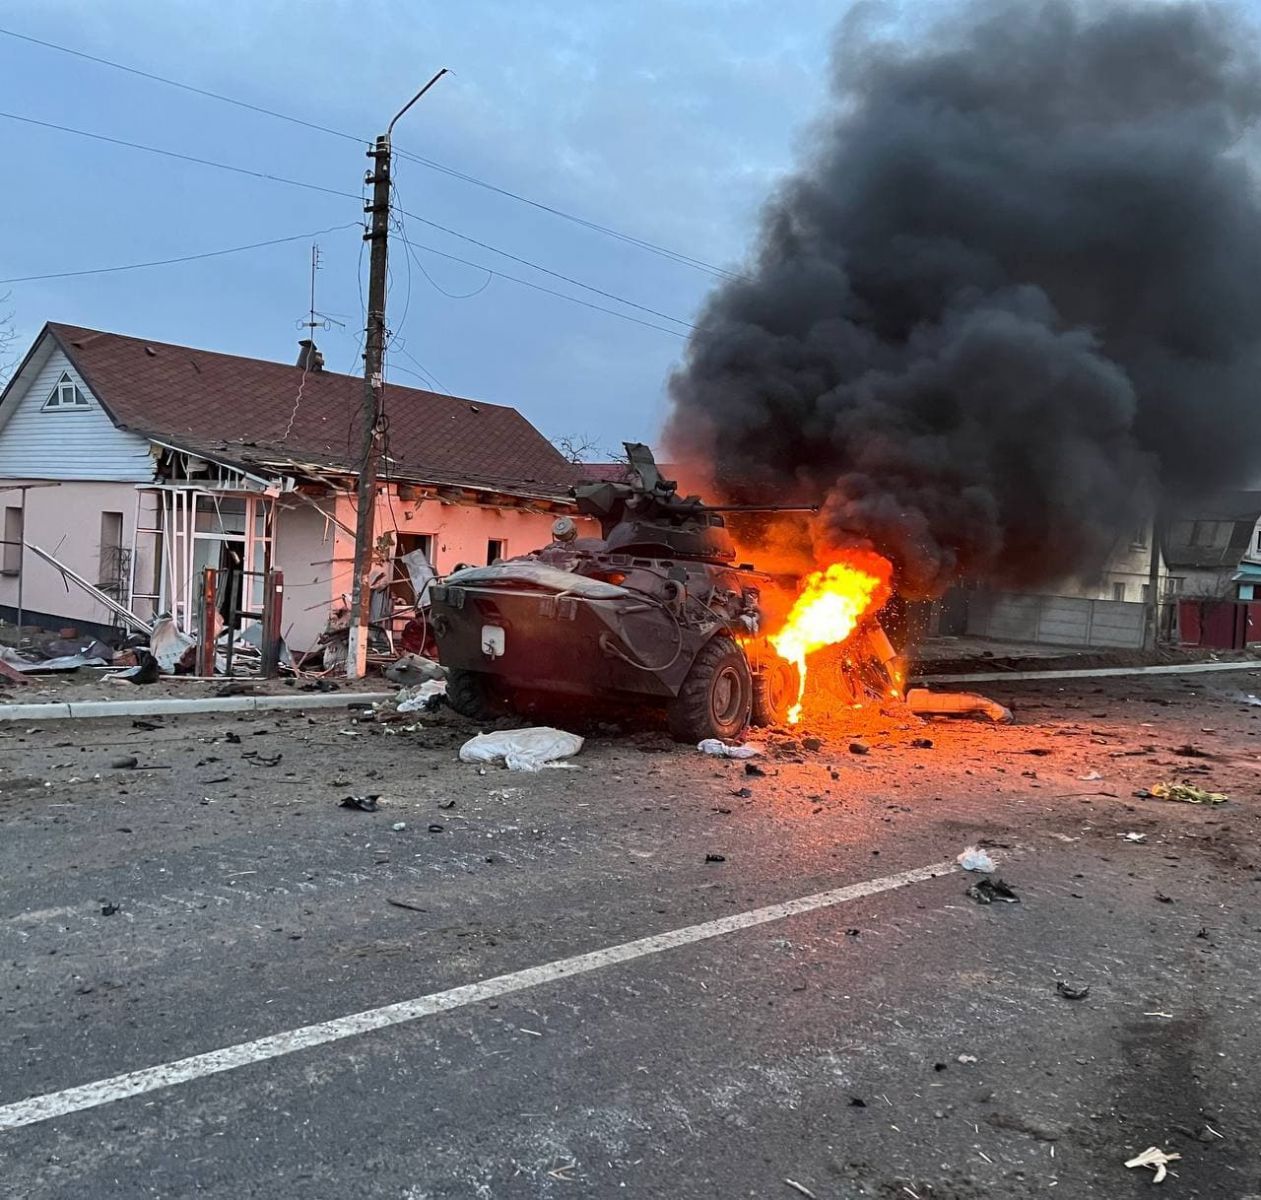 Поблизу Києва розбили танкову колону окупантів - відео бою